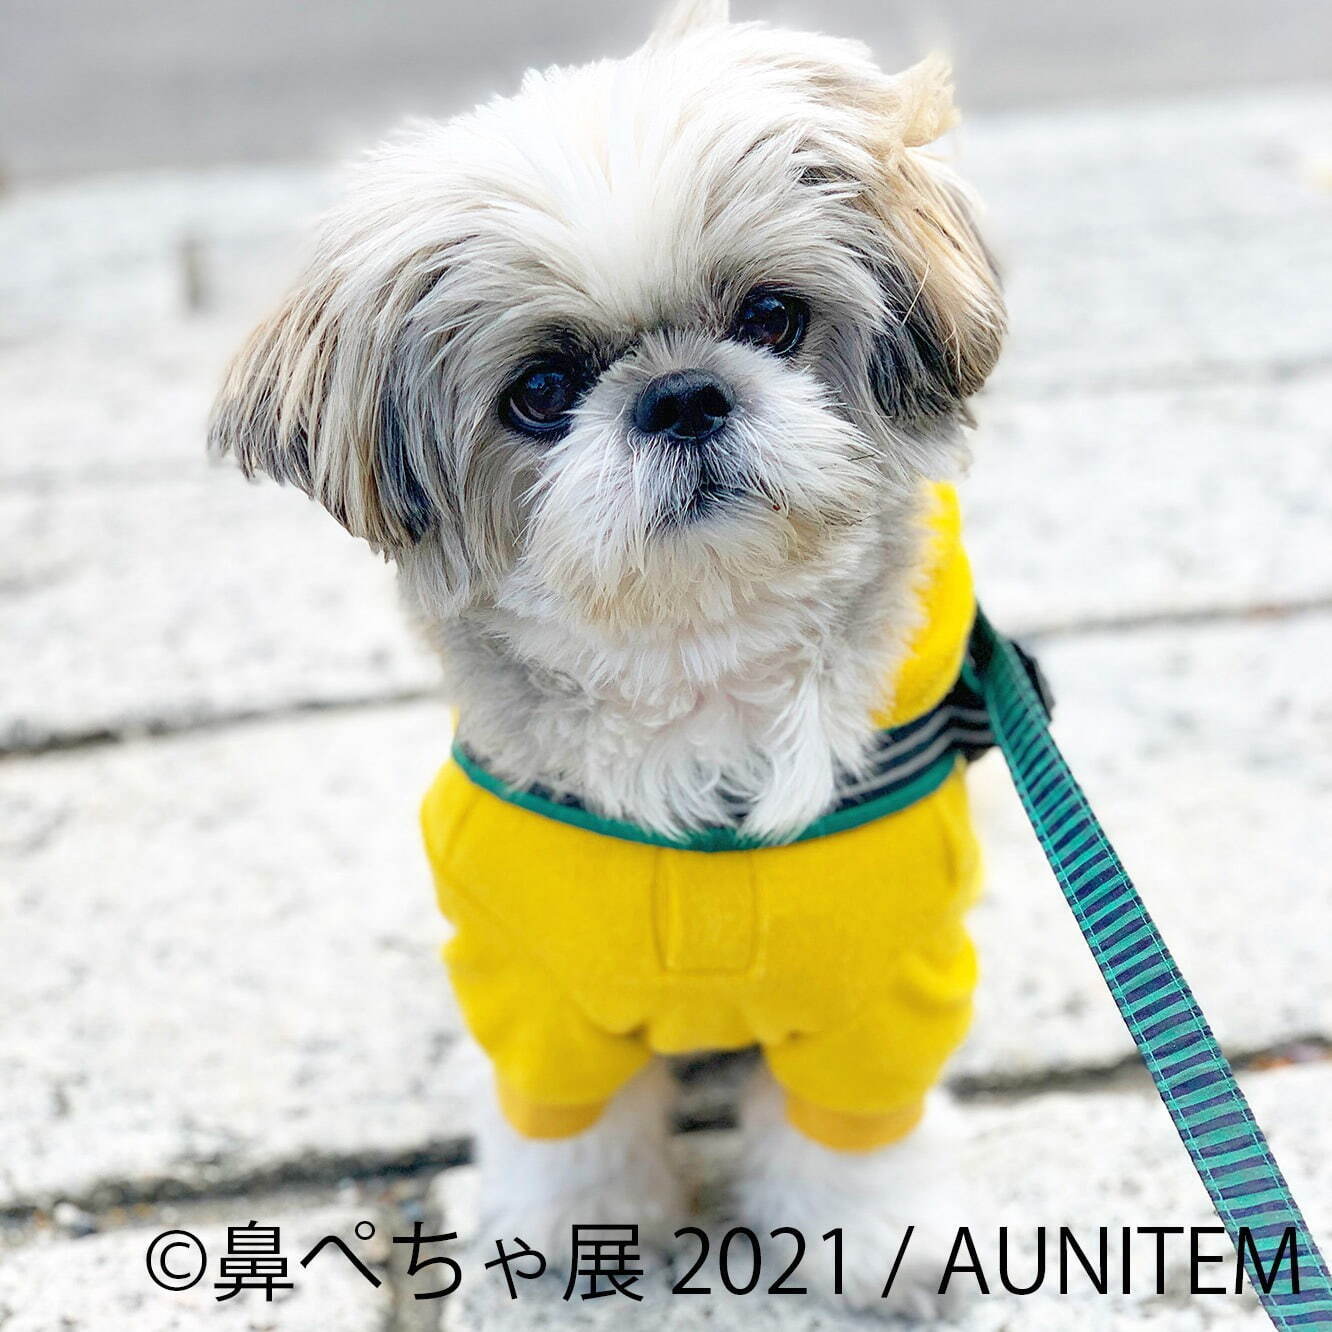 写真4 19 鼻ぺちゃ犬 の合同写真展 物販展が横浜みなとみらい 調布パルコで ぶひ可愛い 犬作品集結 ファッションプレス